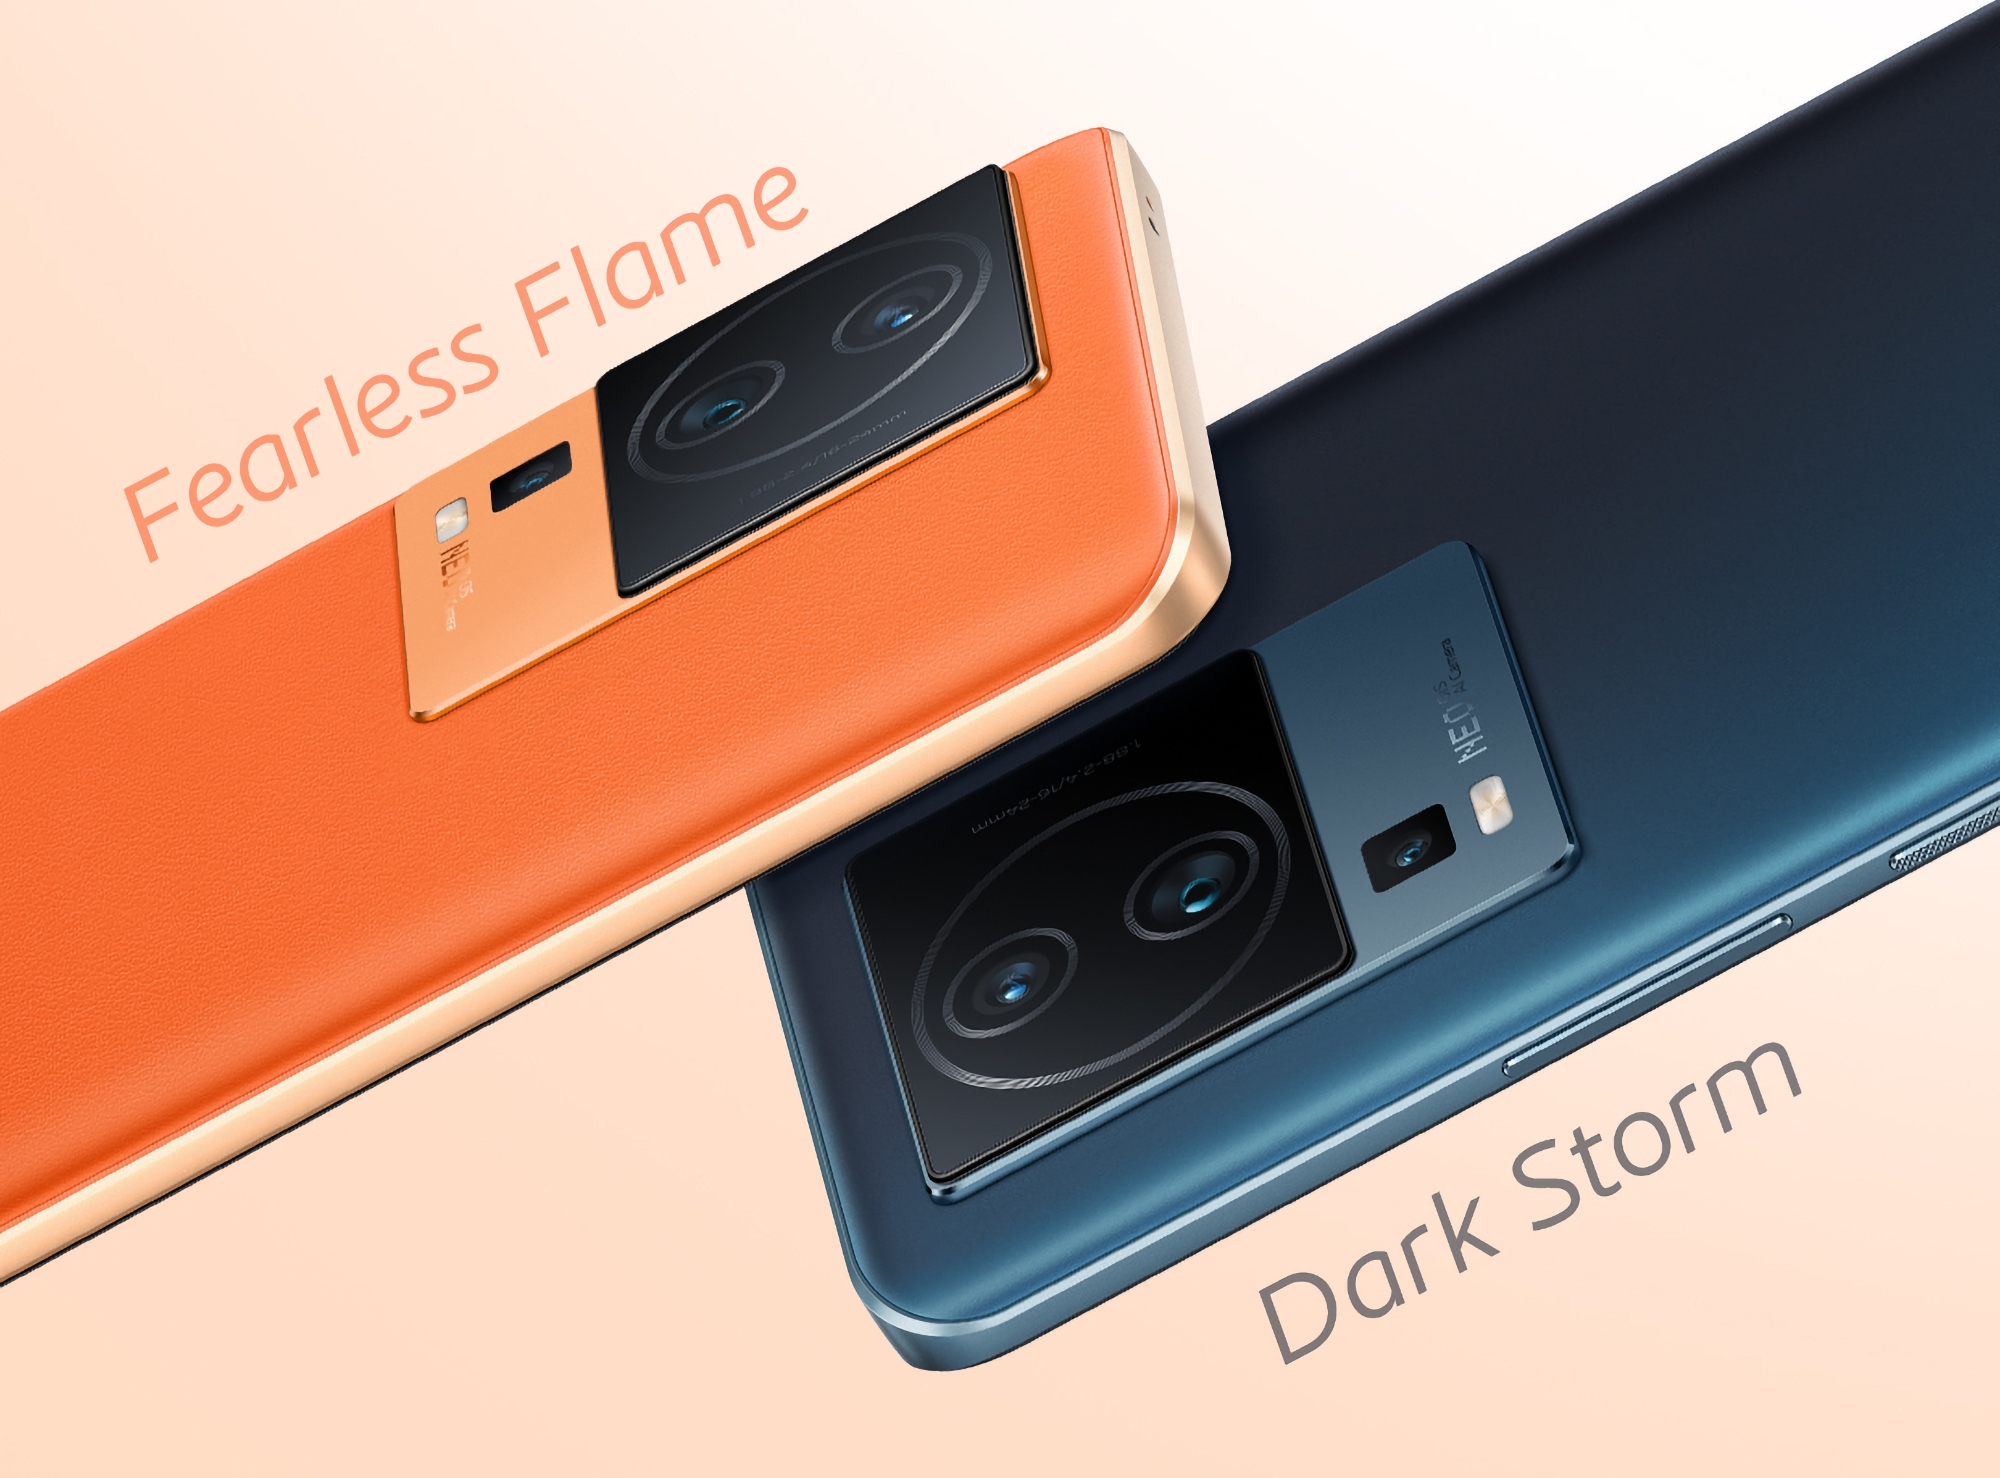 Zwei Farben und eine Dreifachkamera: vivo veröffentlicht einen neuen Teaser des iQOO Neo 7 Pro Smartphones